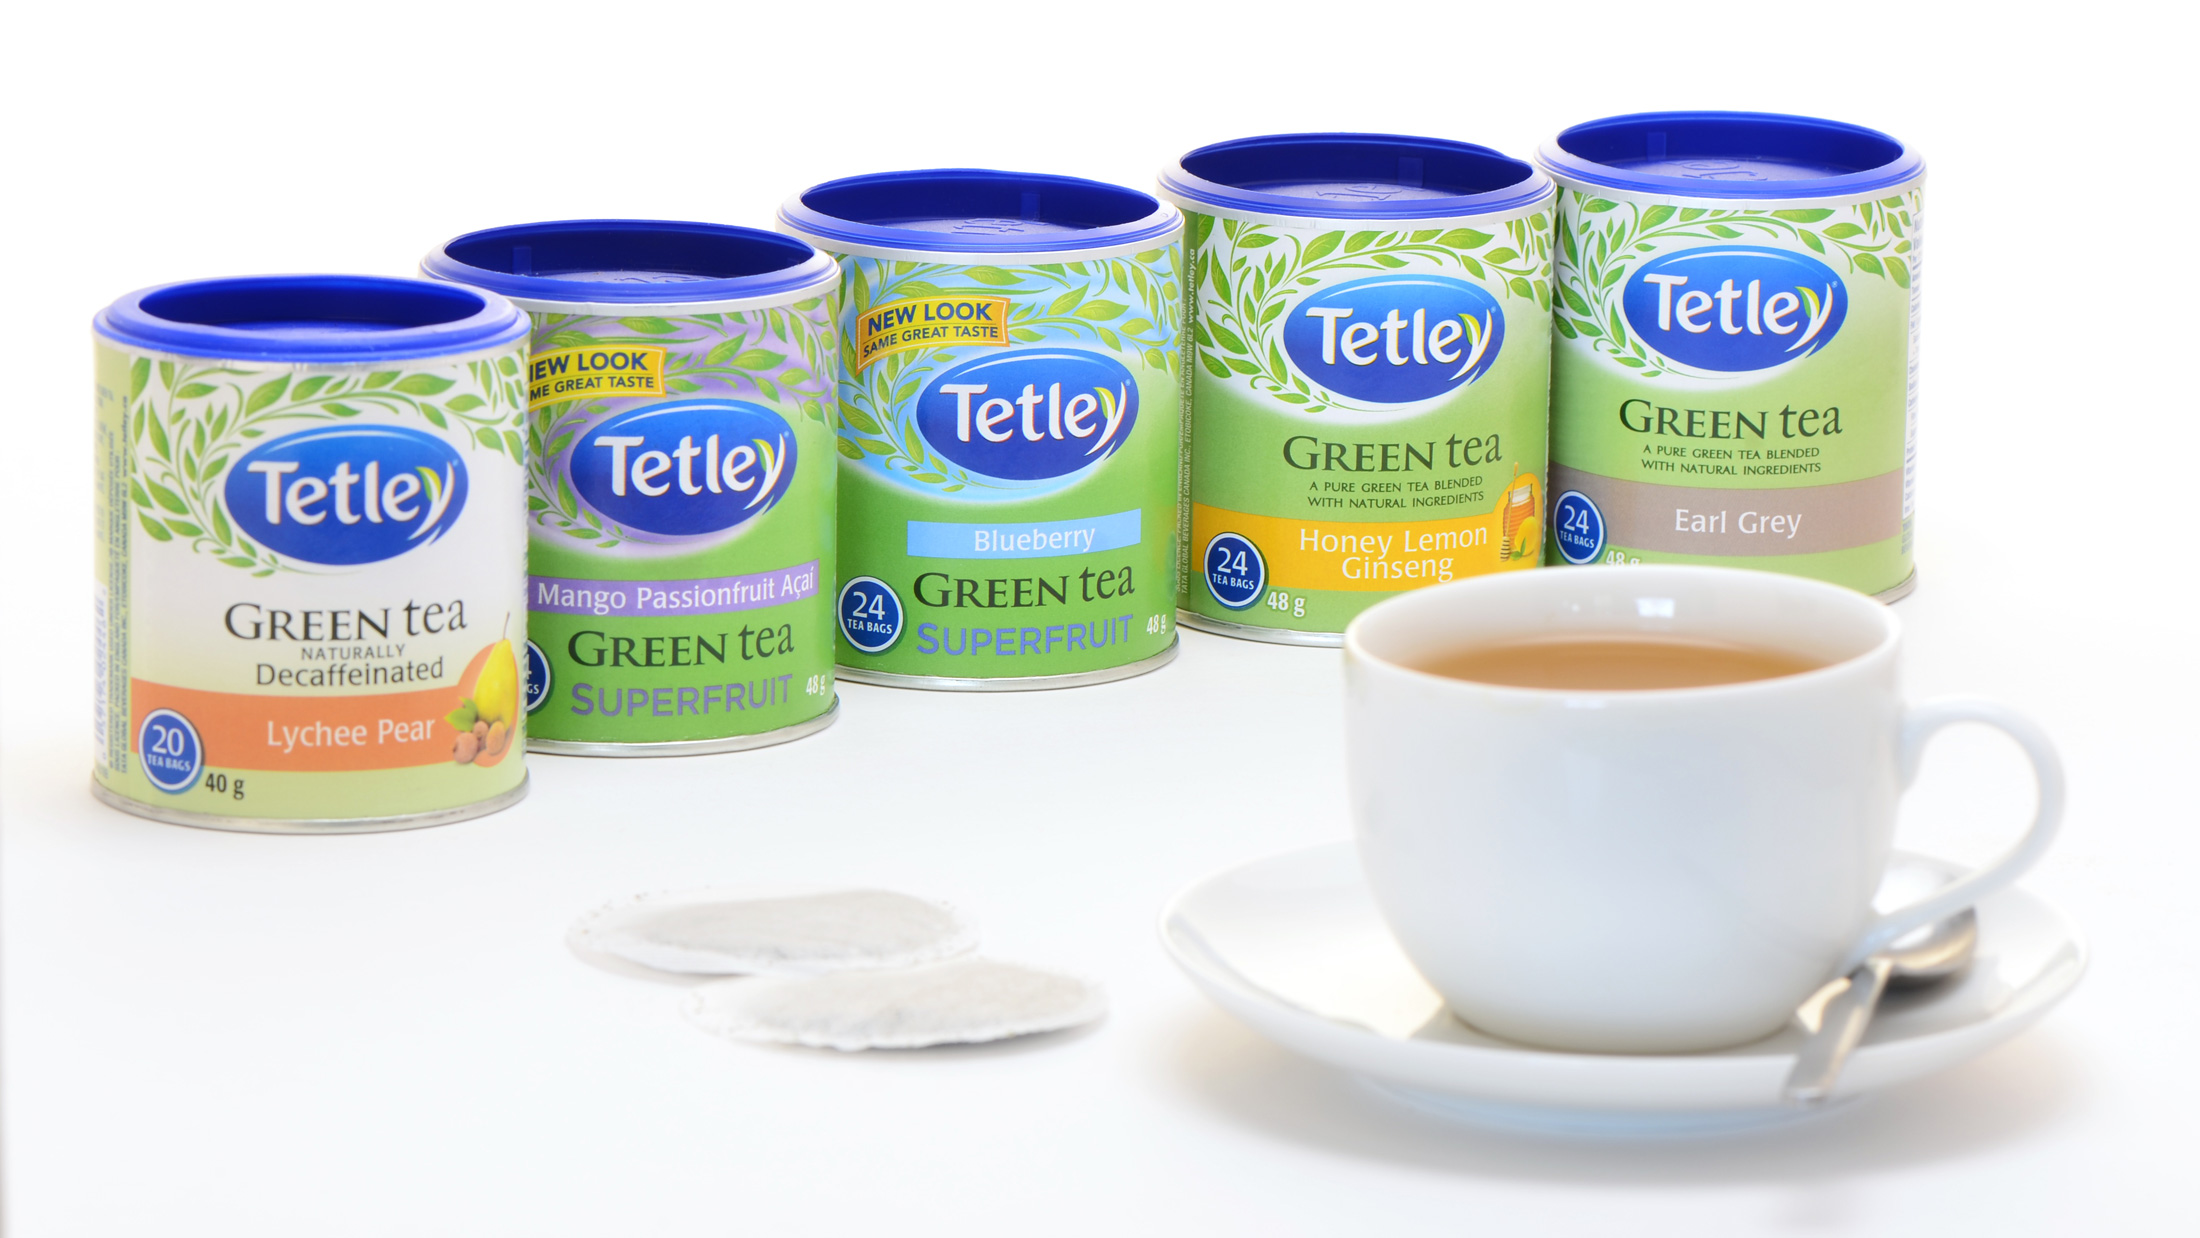 Tetley teas